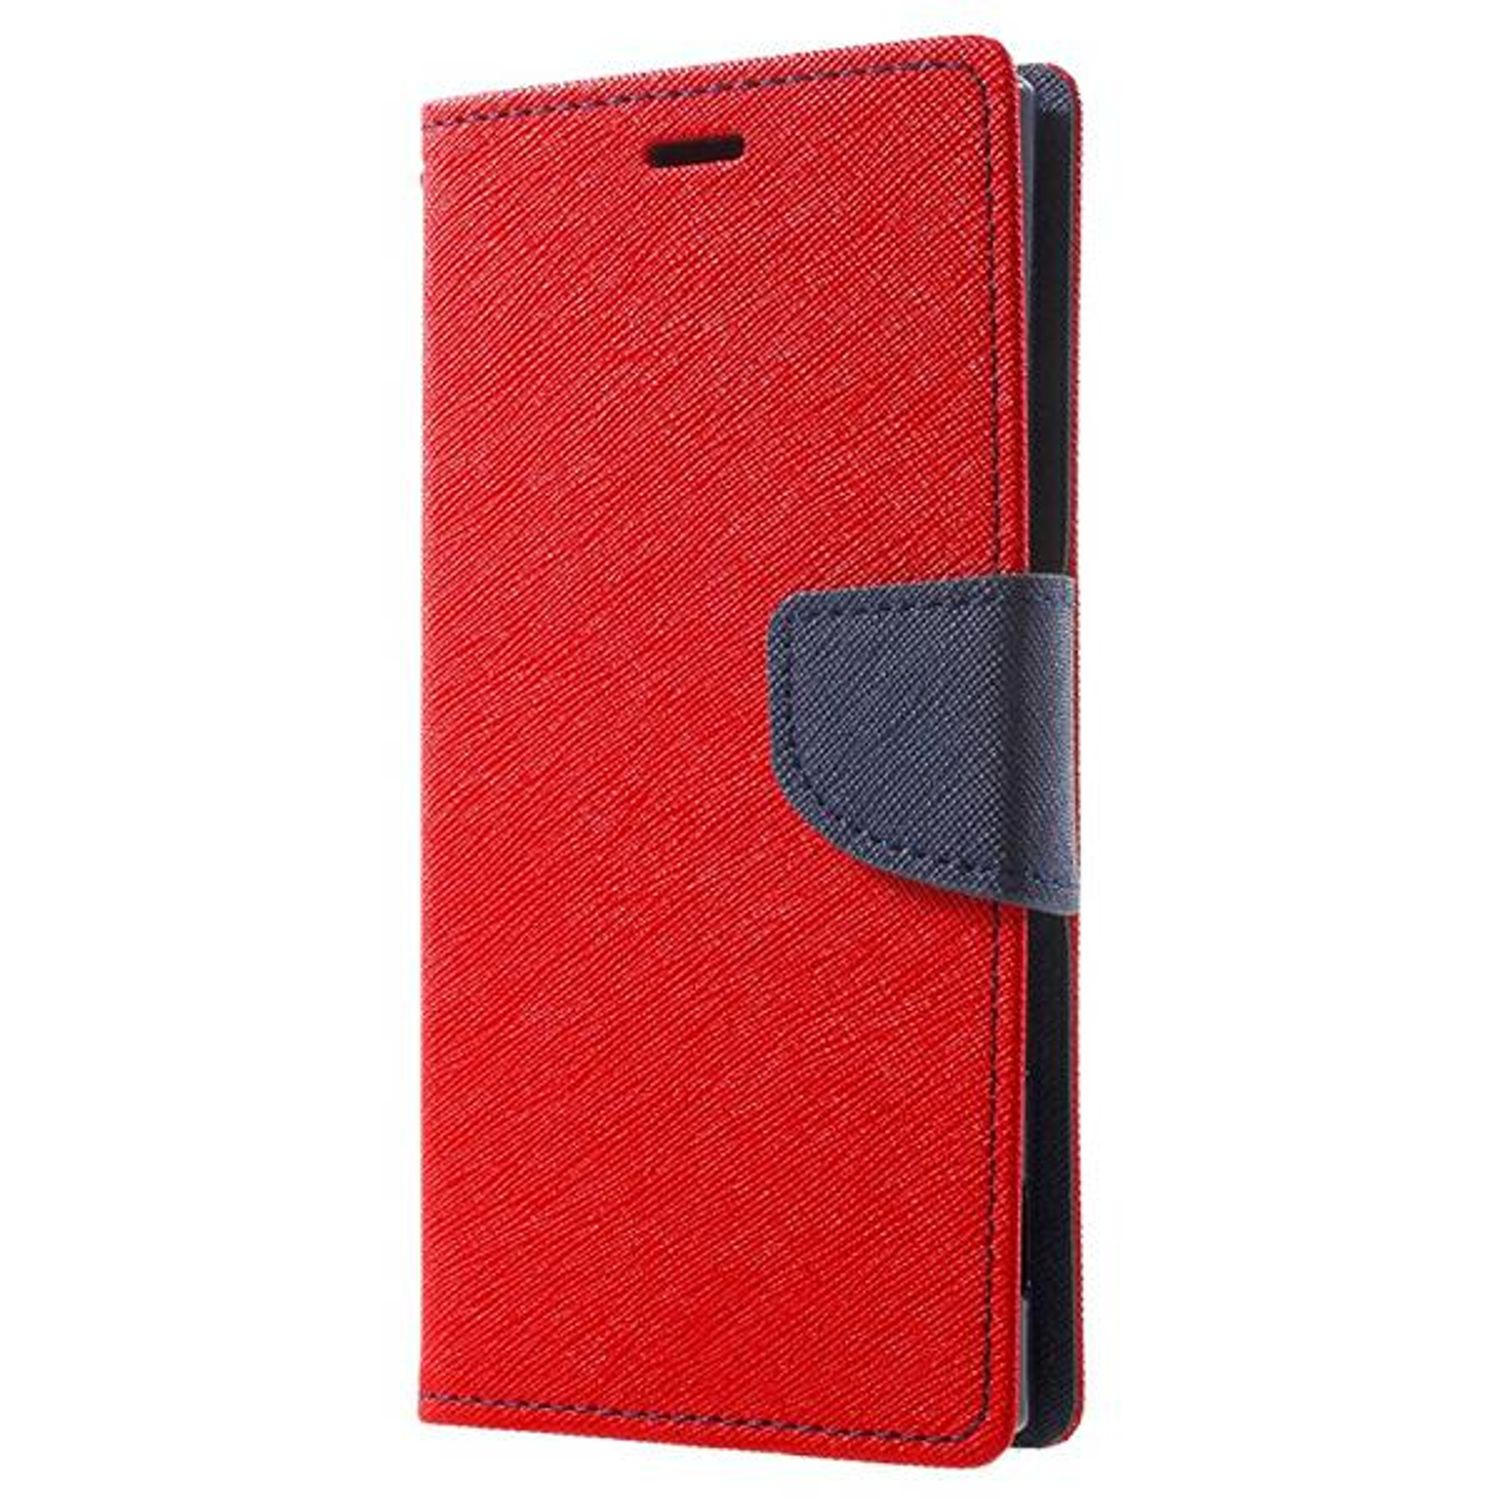 Samsung, KÖNIG 4G, A72 Rot Galaxy DESIGN Schutzhülle, Bookcover,